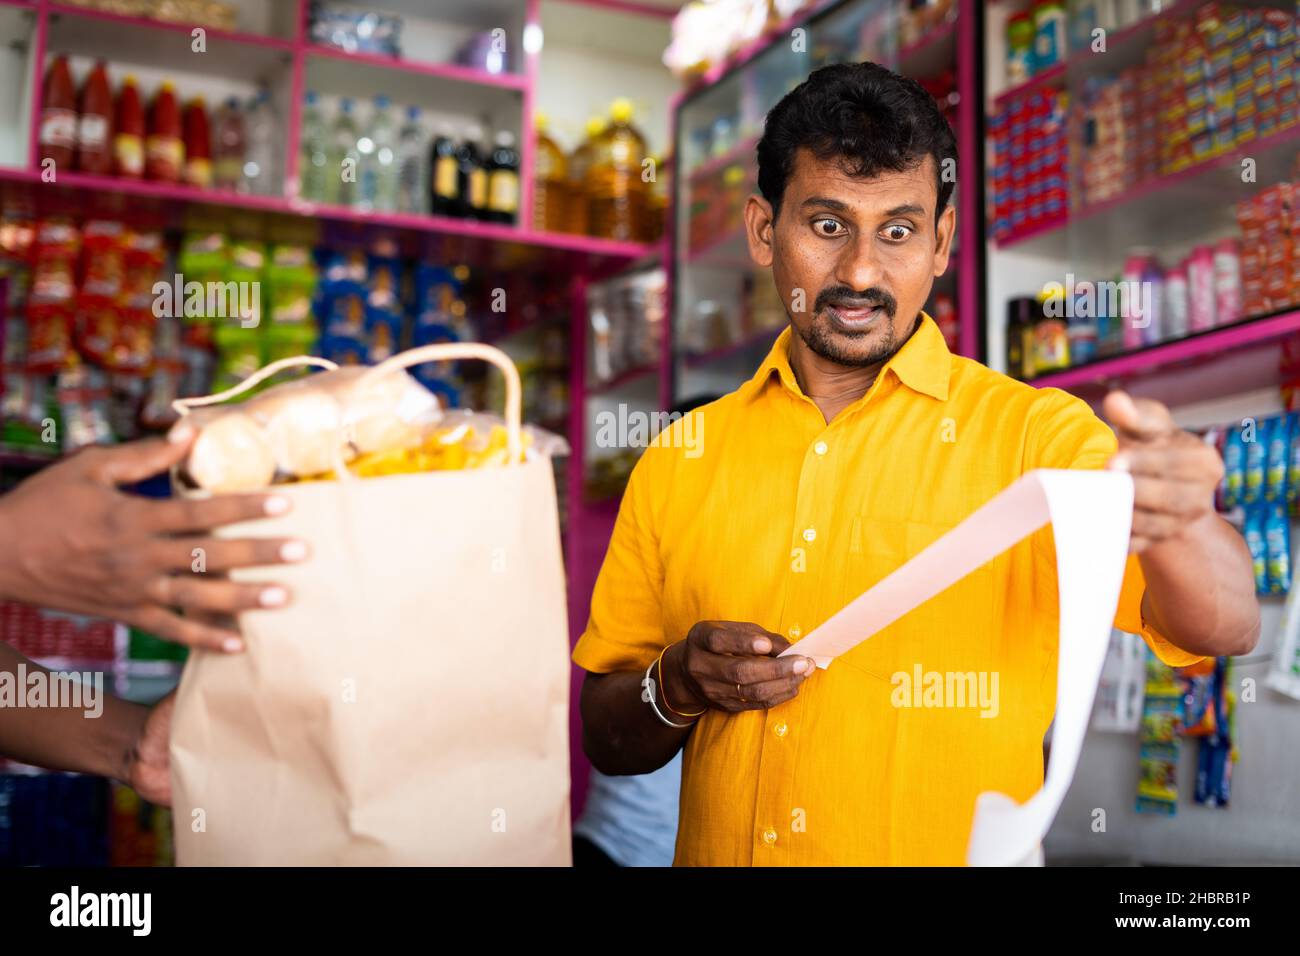 Cliente scioccato a Kirana o negozio di alimentari dopo aver visto la ricezione di fatture alimentari - concetto di inflazione, aumento dei prezzi e consumismo. Foto Stock